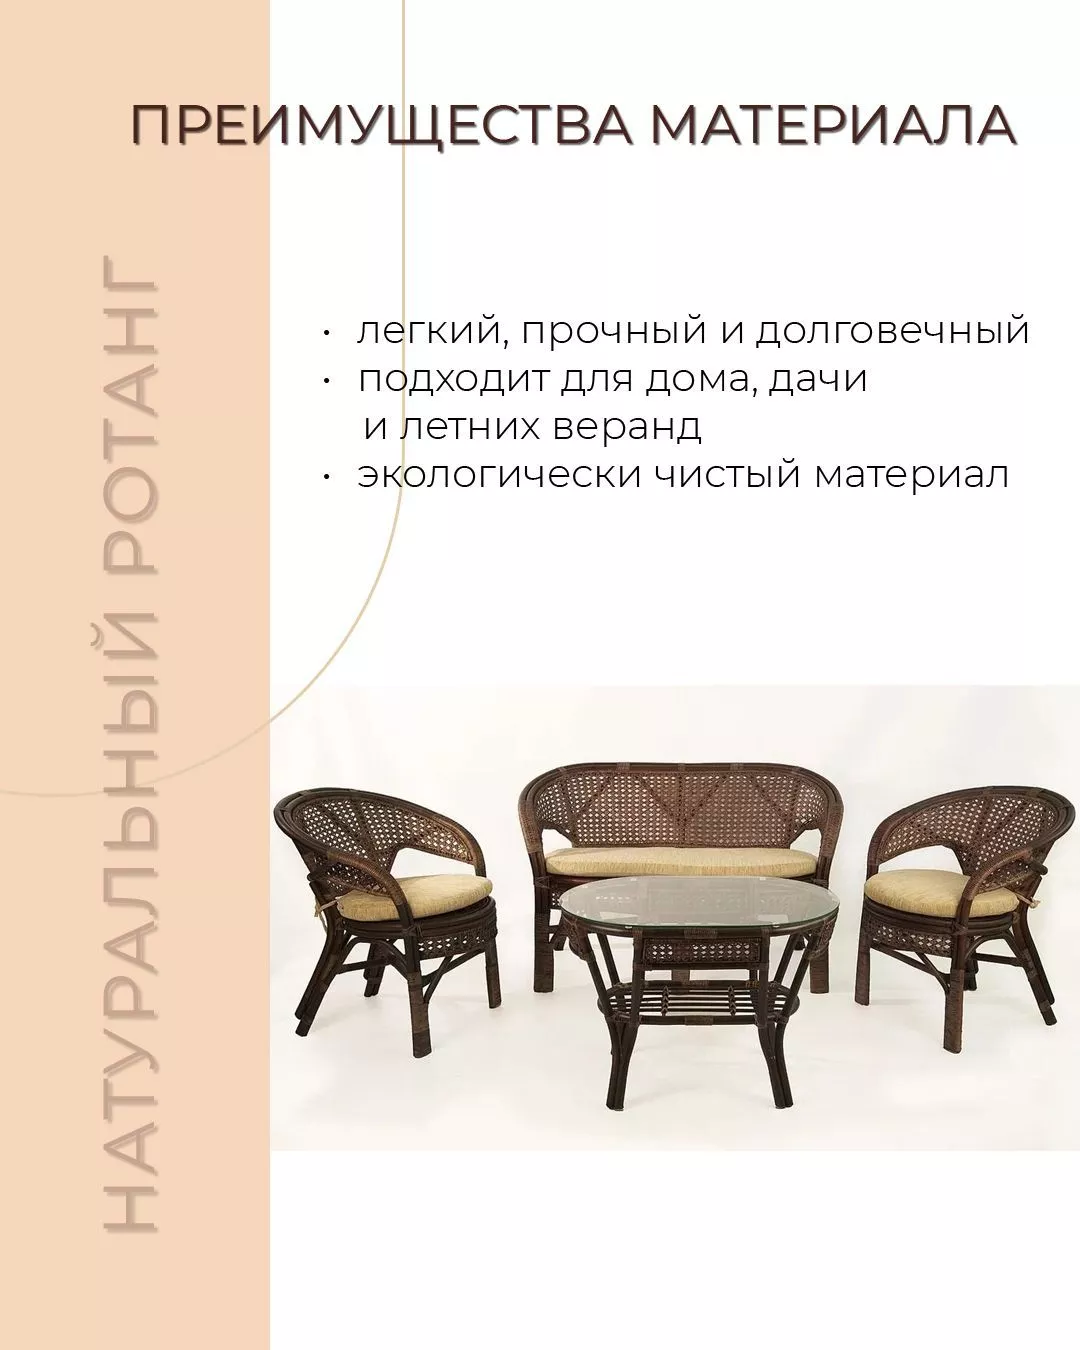 Комплект мебели из ротанга Пеланги 02 15 с 2х местным диваном и овальным столом орех матовый